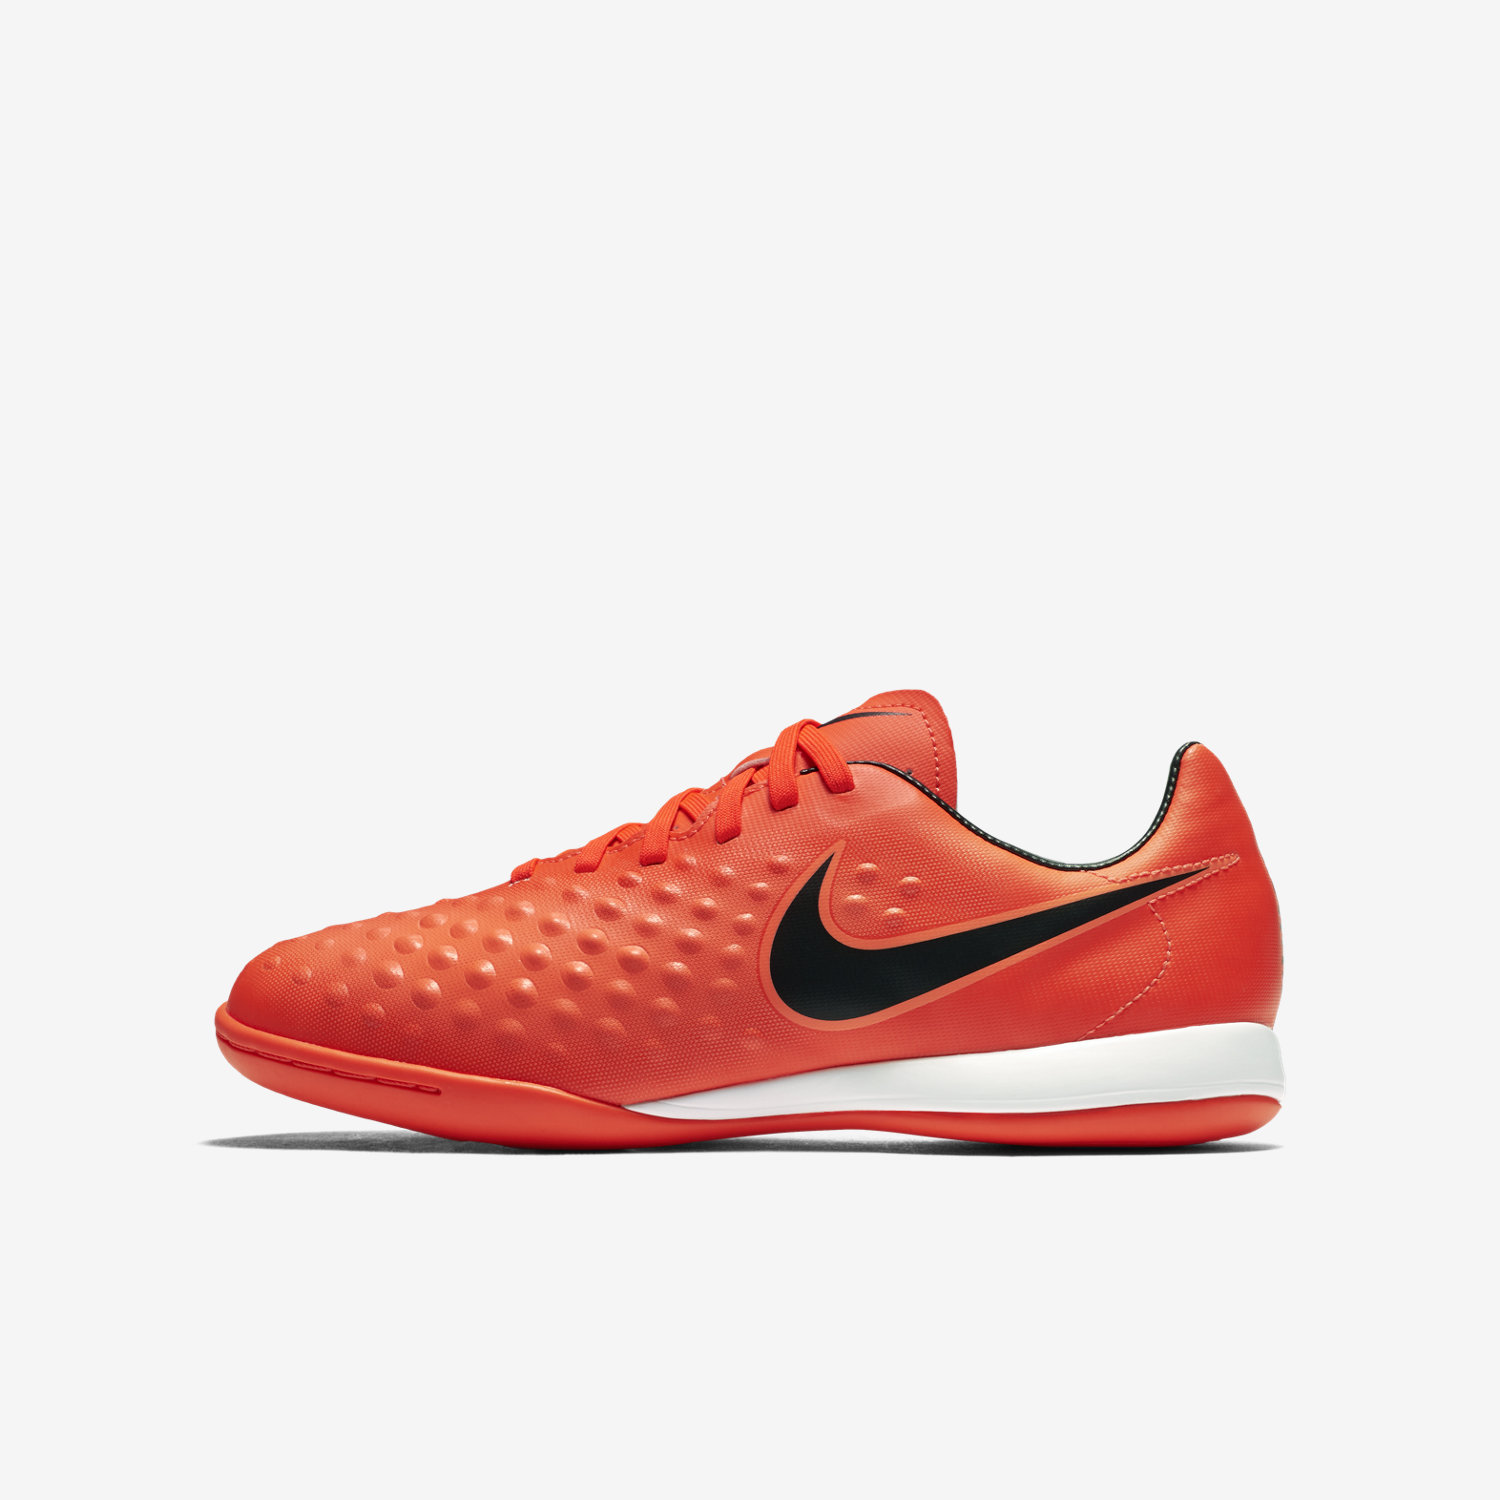 ποδοσφαιρικα παπουτσια για αγορια Nike Jr. Magista Opus II IC κοκκινα/ανοιχτο Μάνγκο/μαυρα 65327148G